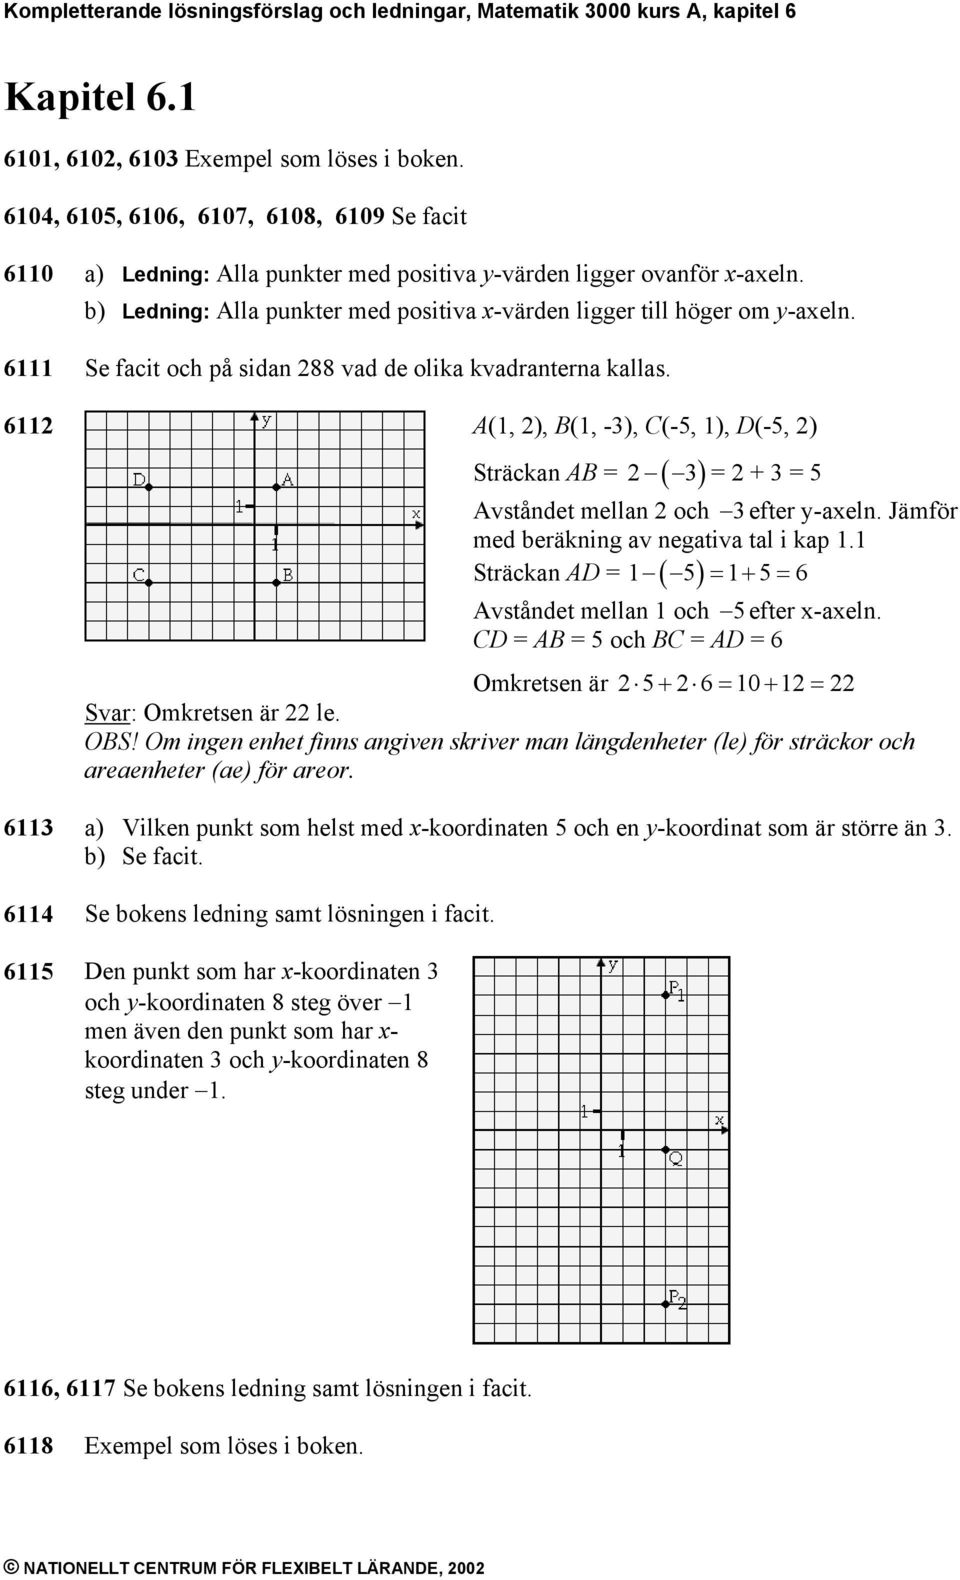 Kompletterande lösningsförslag och ledningar, Matematik 3000 kurs ...